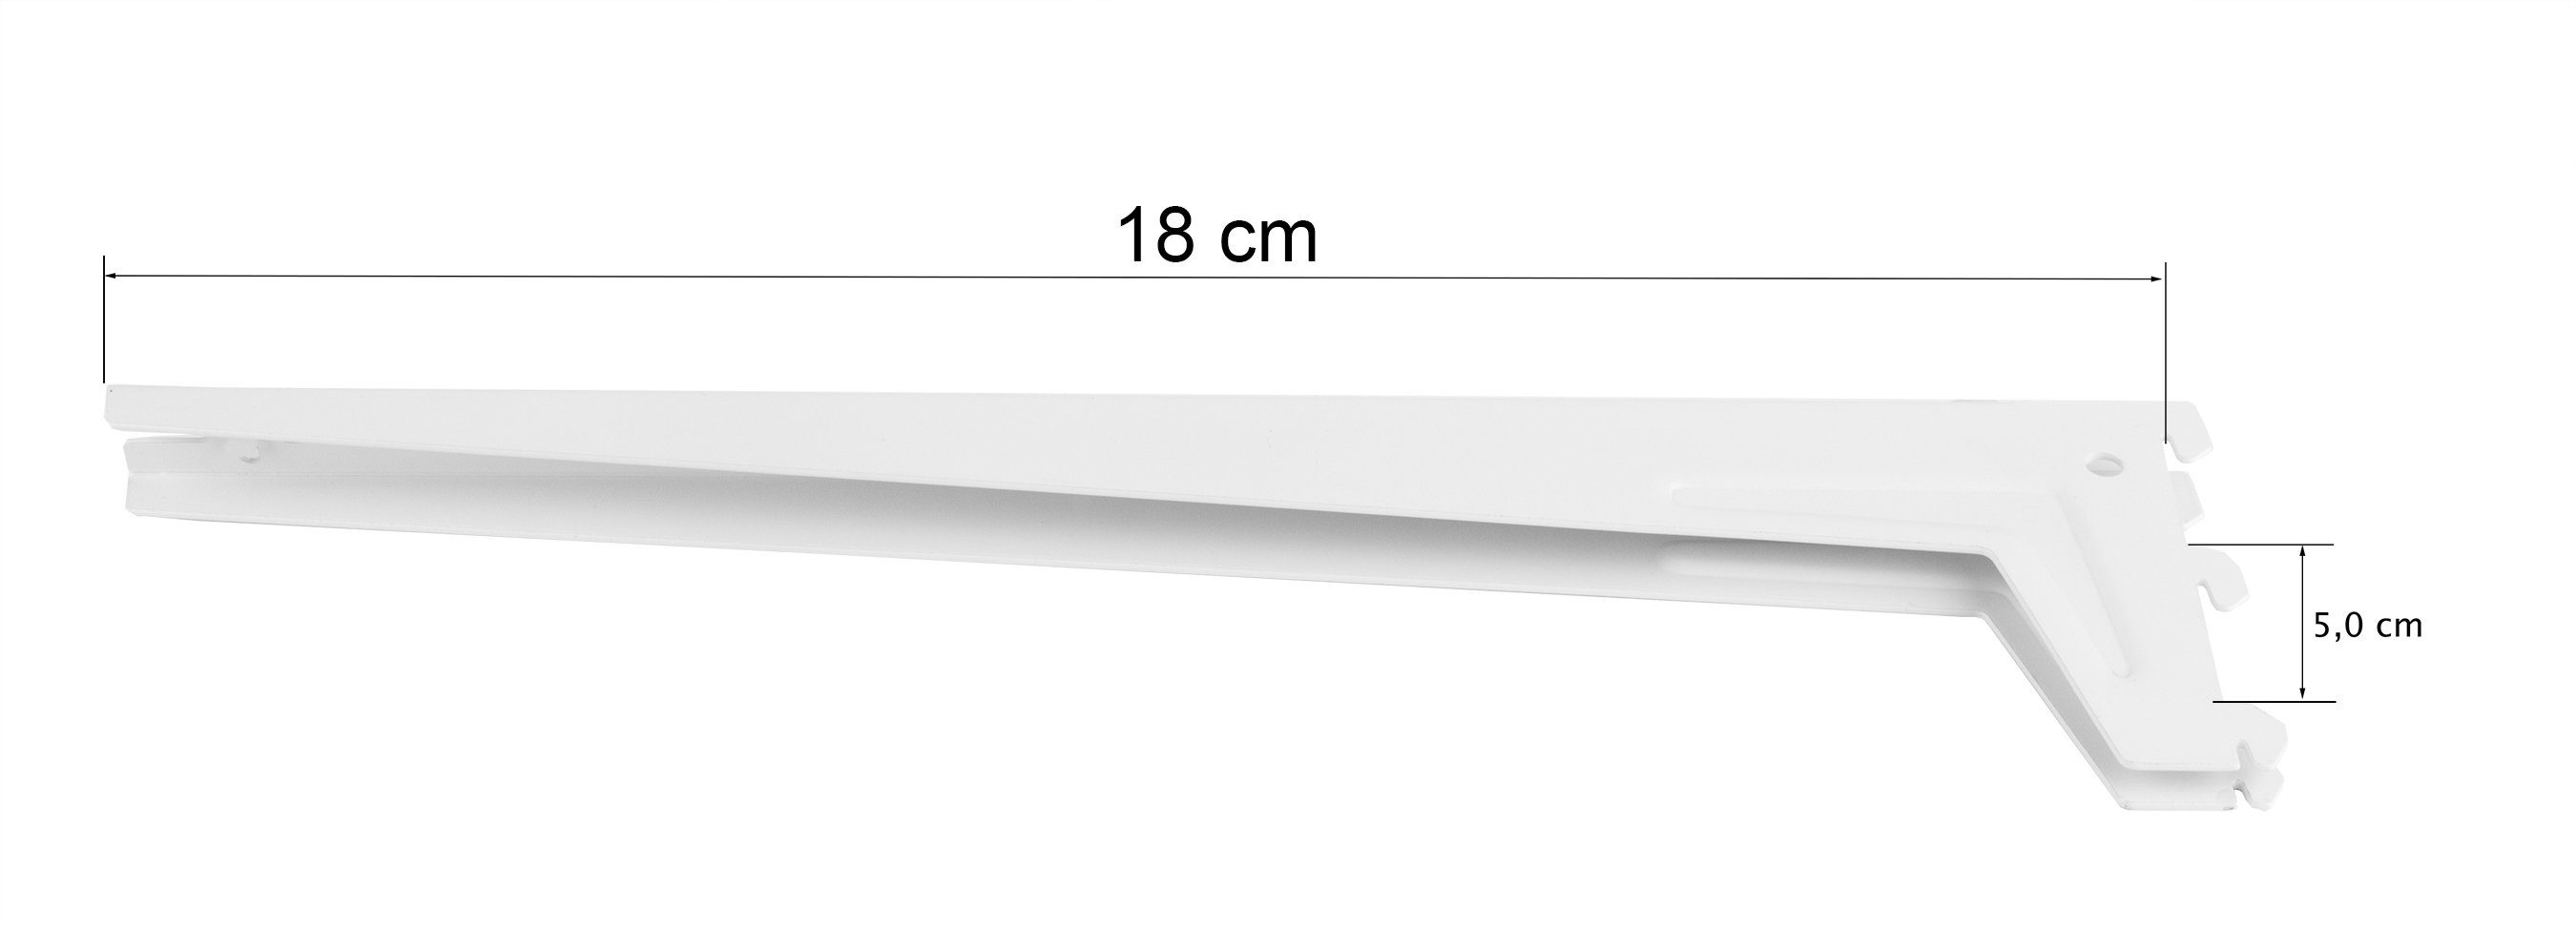 cm BigDean 18x5 Regalträger weiß Passend Wandschienen Winkel-Träger Wandregalhalter zu